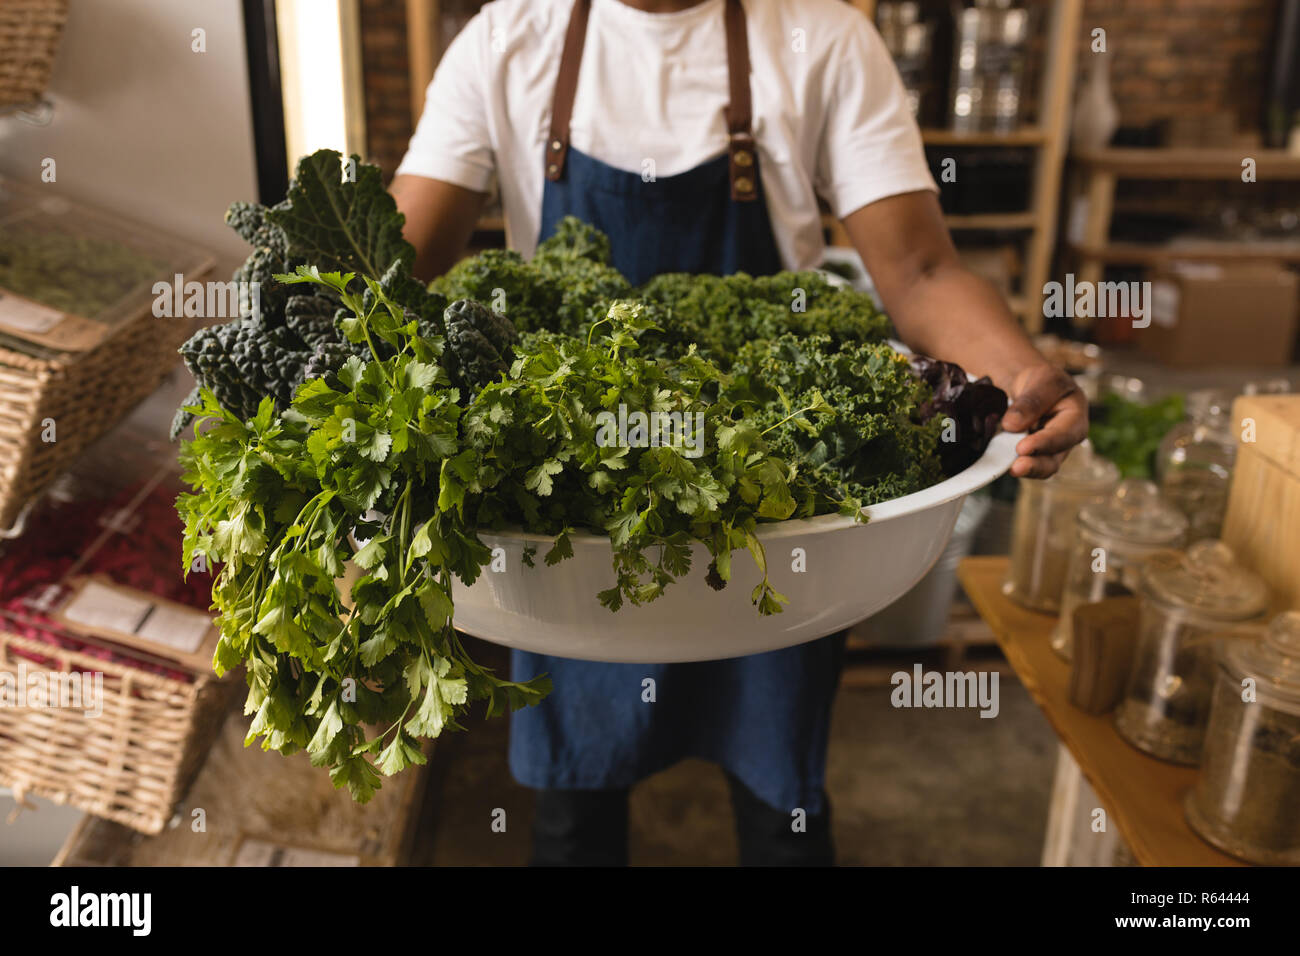 Personale maschile vasca di contenimento di verdura verde nel supermercato Foto Stock